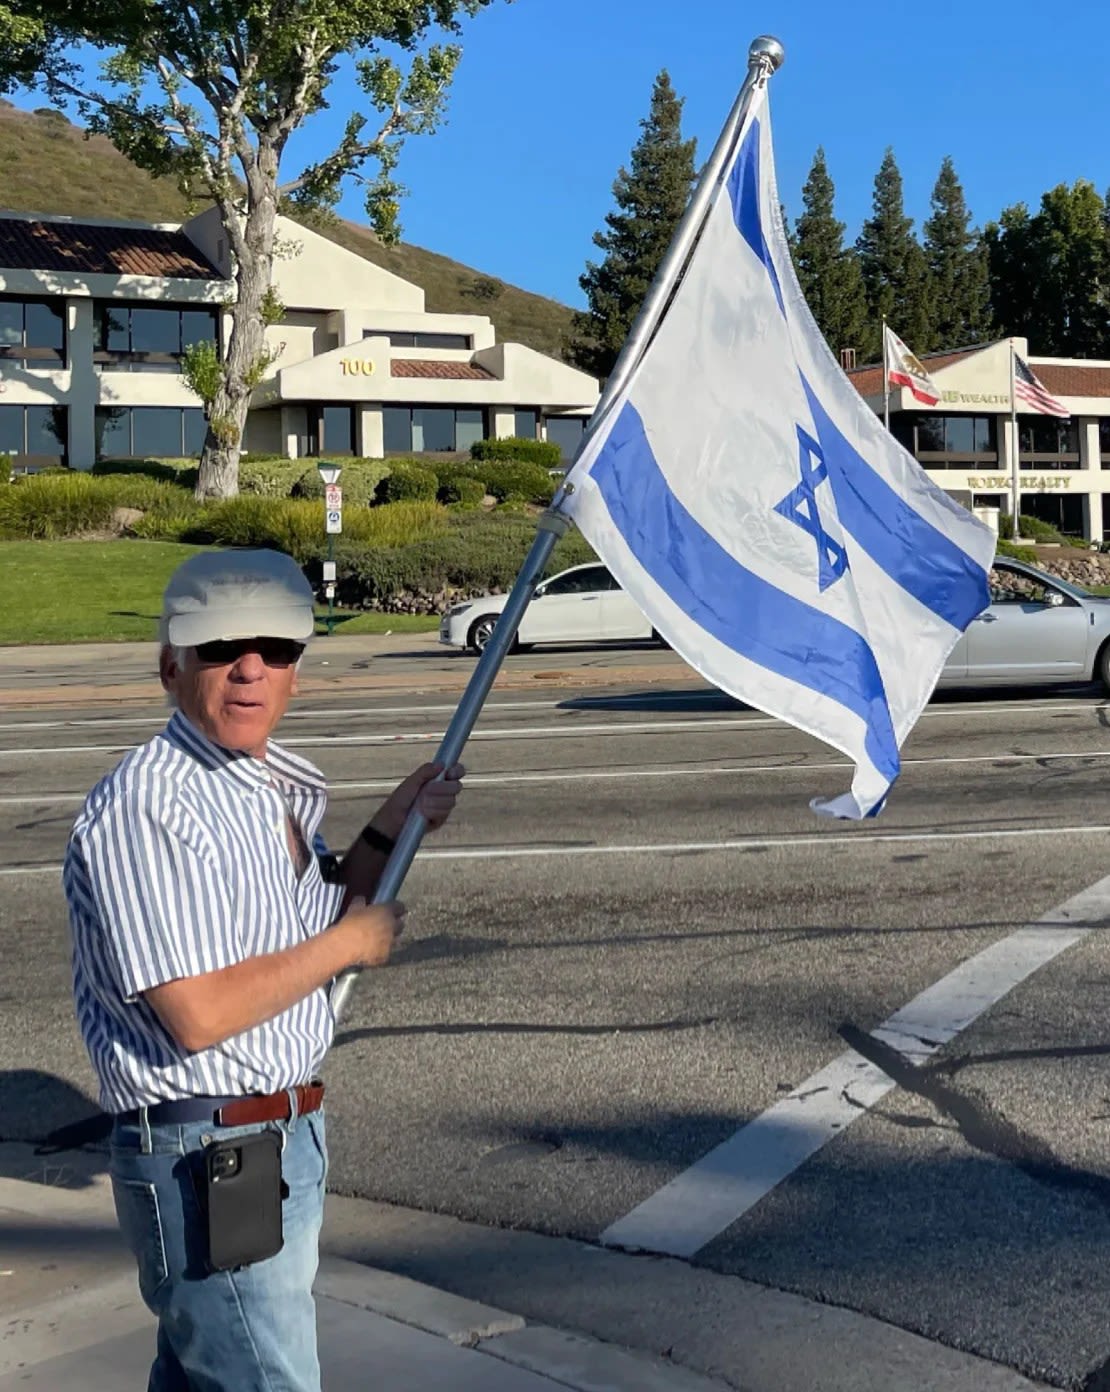 Esta foto, tomada el domingo, muestra a Paul Kessler sosteniendo una bandera israelí en la intersección donde más tarde tendría lugar el altercado.